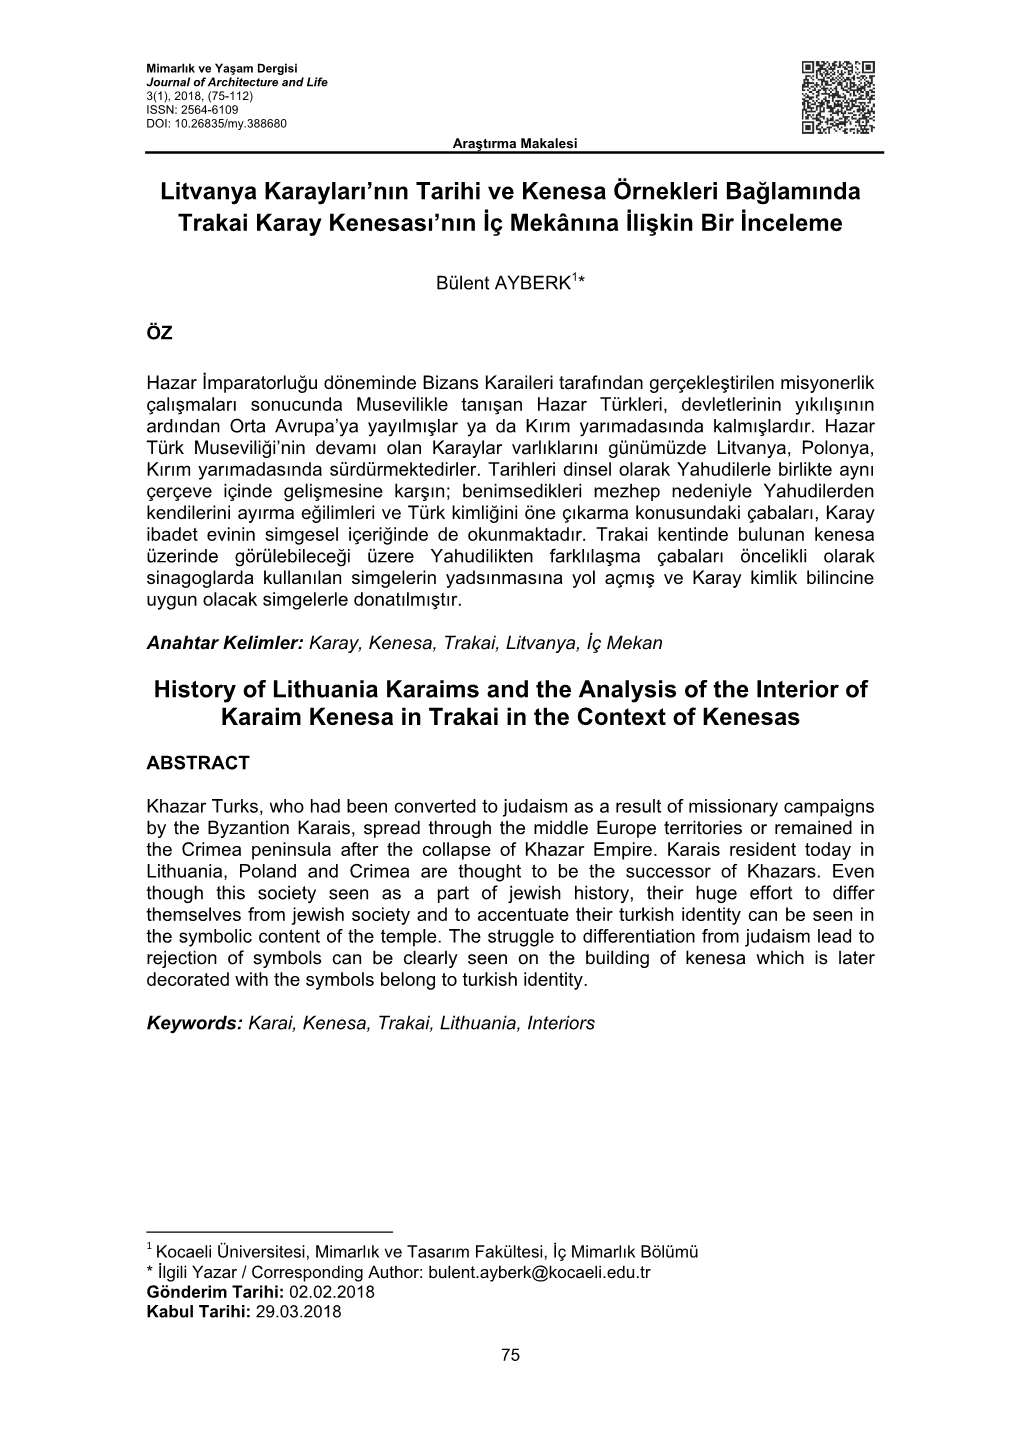 Litvanya Karayları'nın Tarihi Ve Kenesa Örnekleri Bağlamında Trakai Karay Kenesası'nın İç Mekânına İlişkin